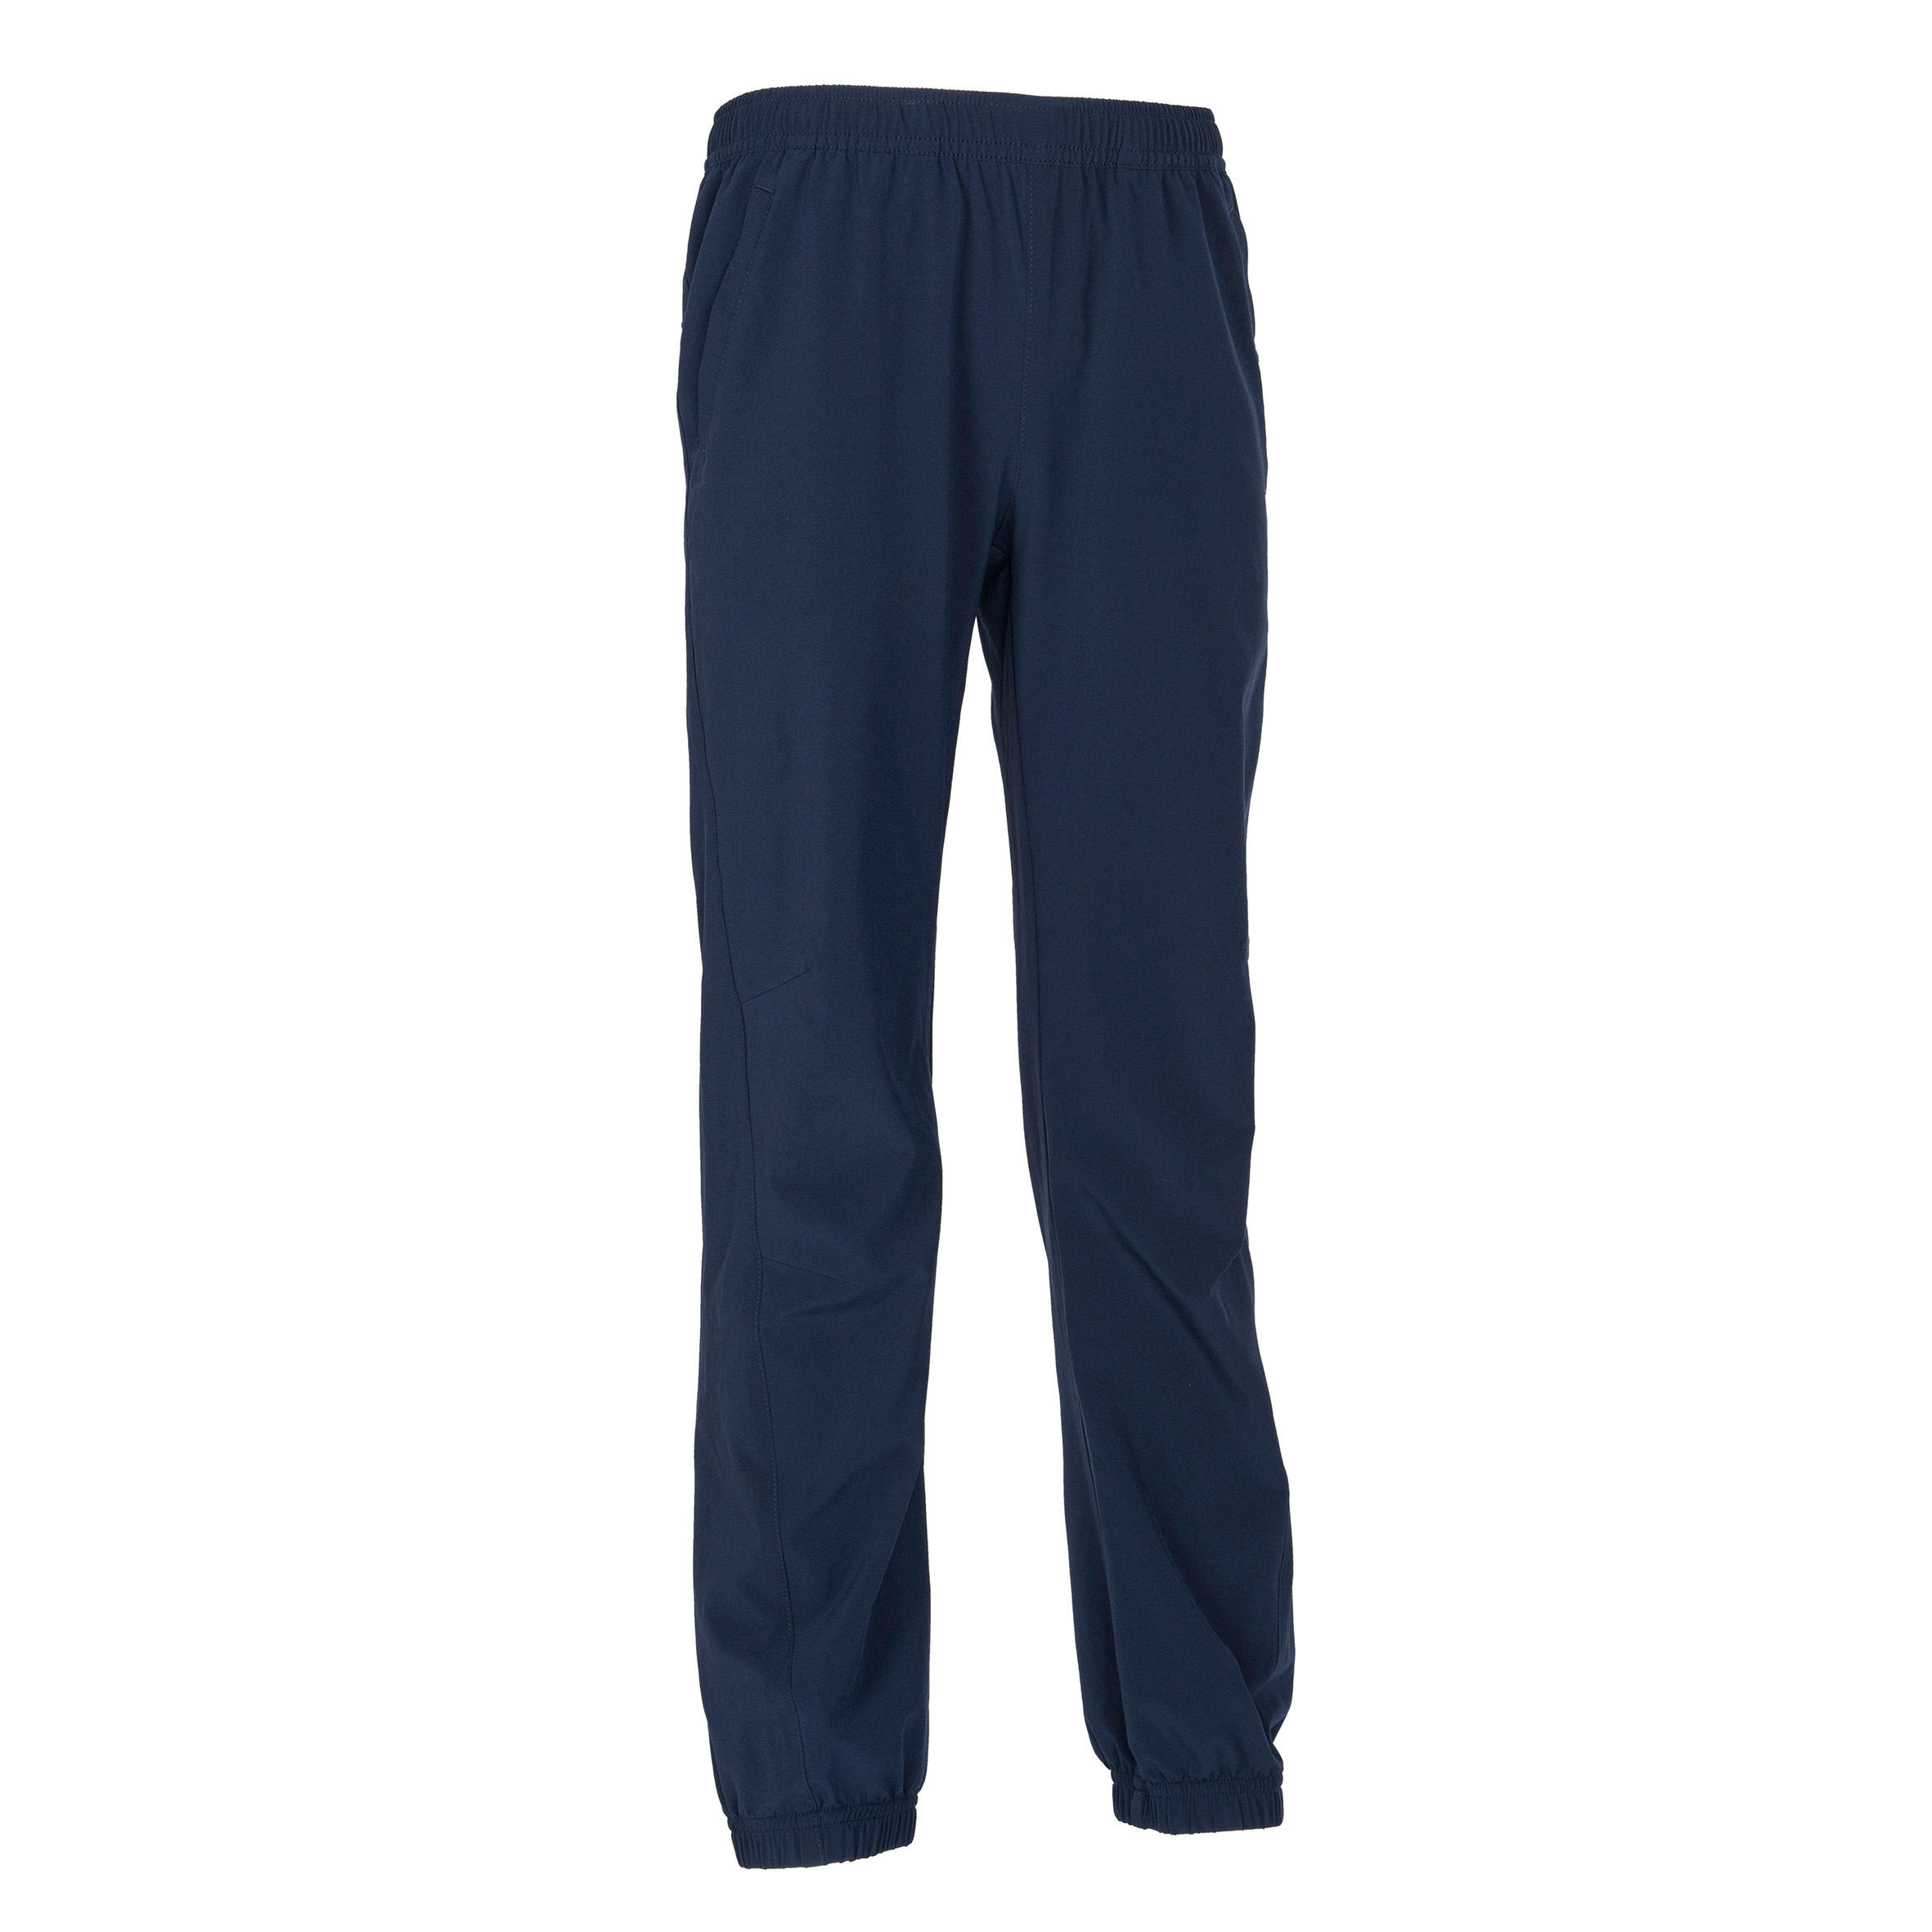 Unisex Kids' Trousers Ultra Light W500B - Navy Blue